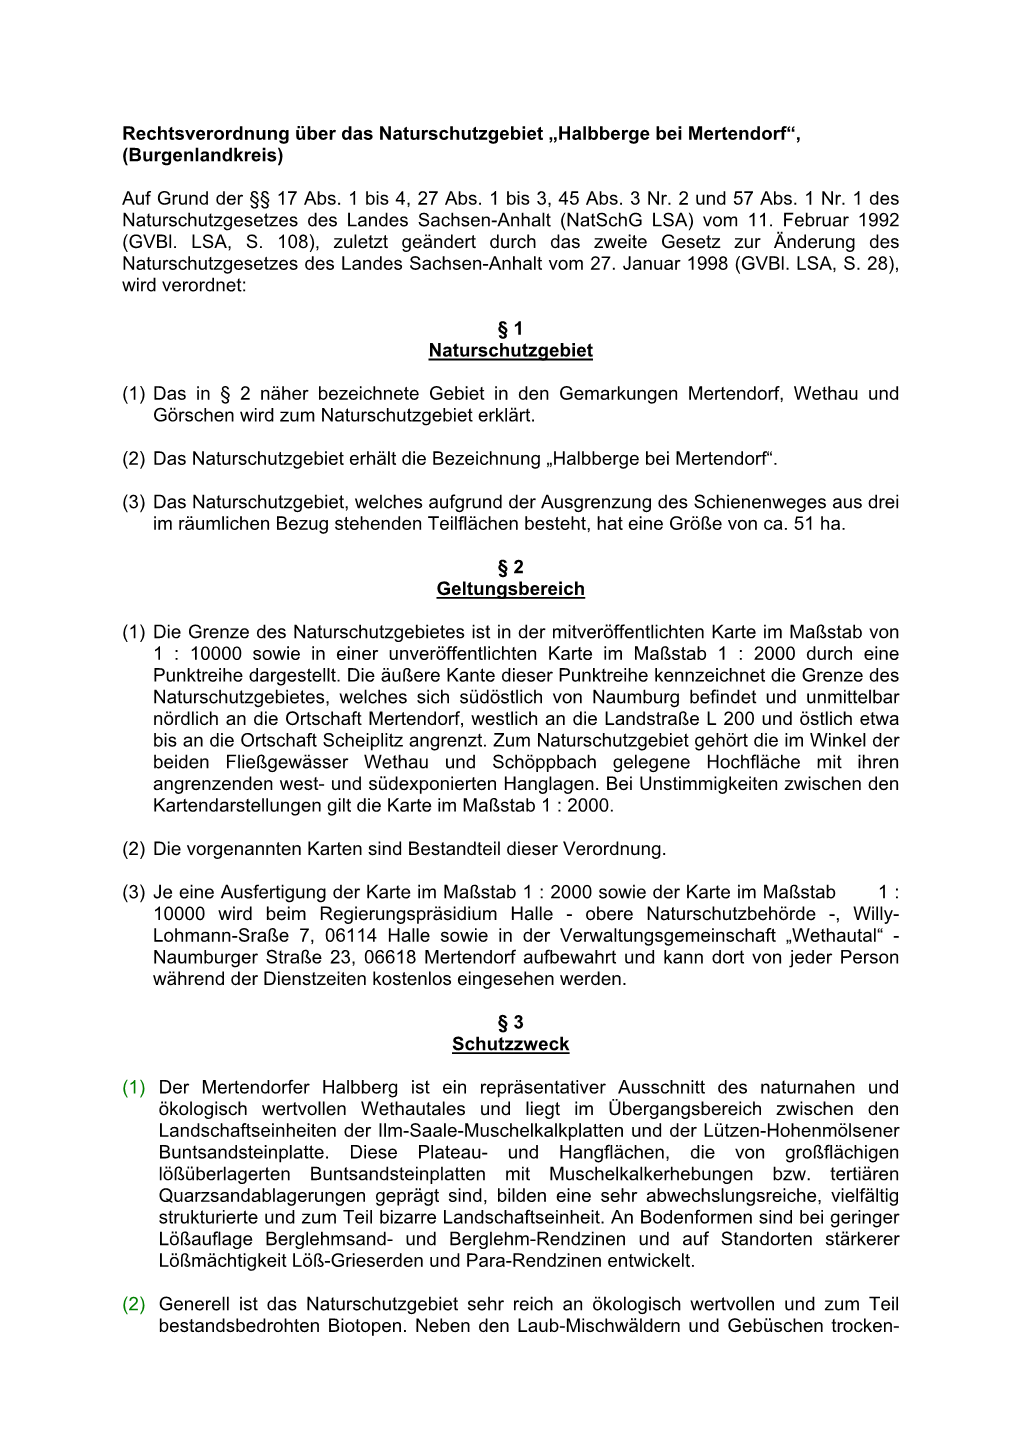 Rechtsverordnung Über Das Naturschutzgebiet „Halbberge Bei Mertendorf“, (Burgenlandkreis)